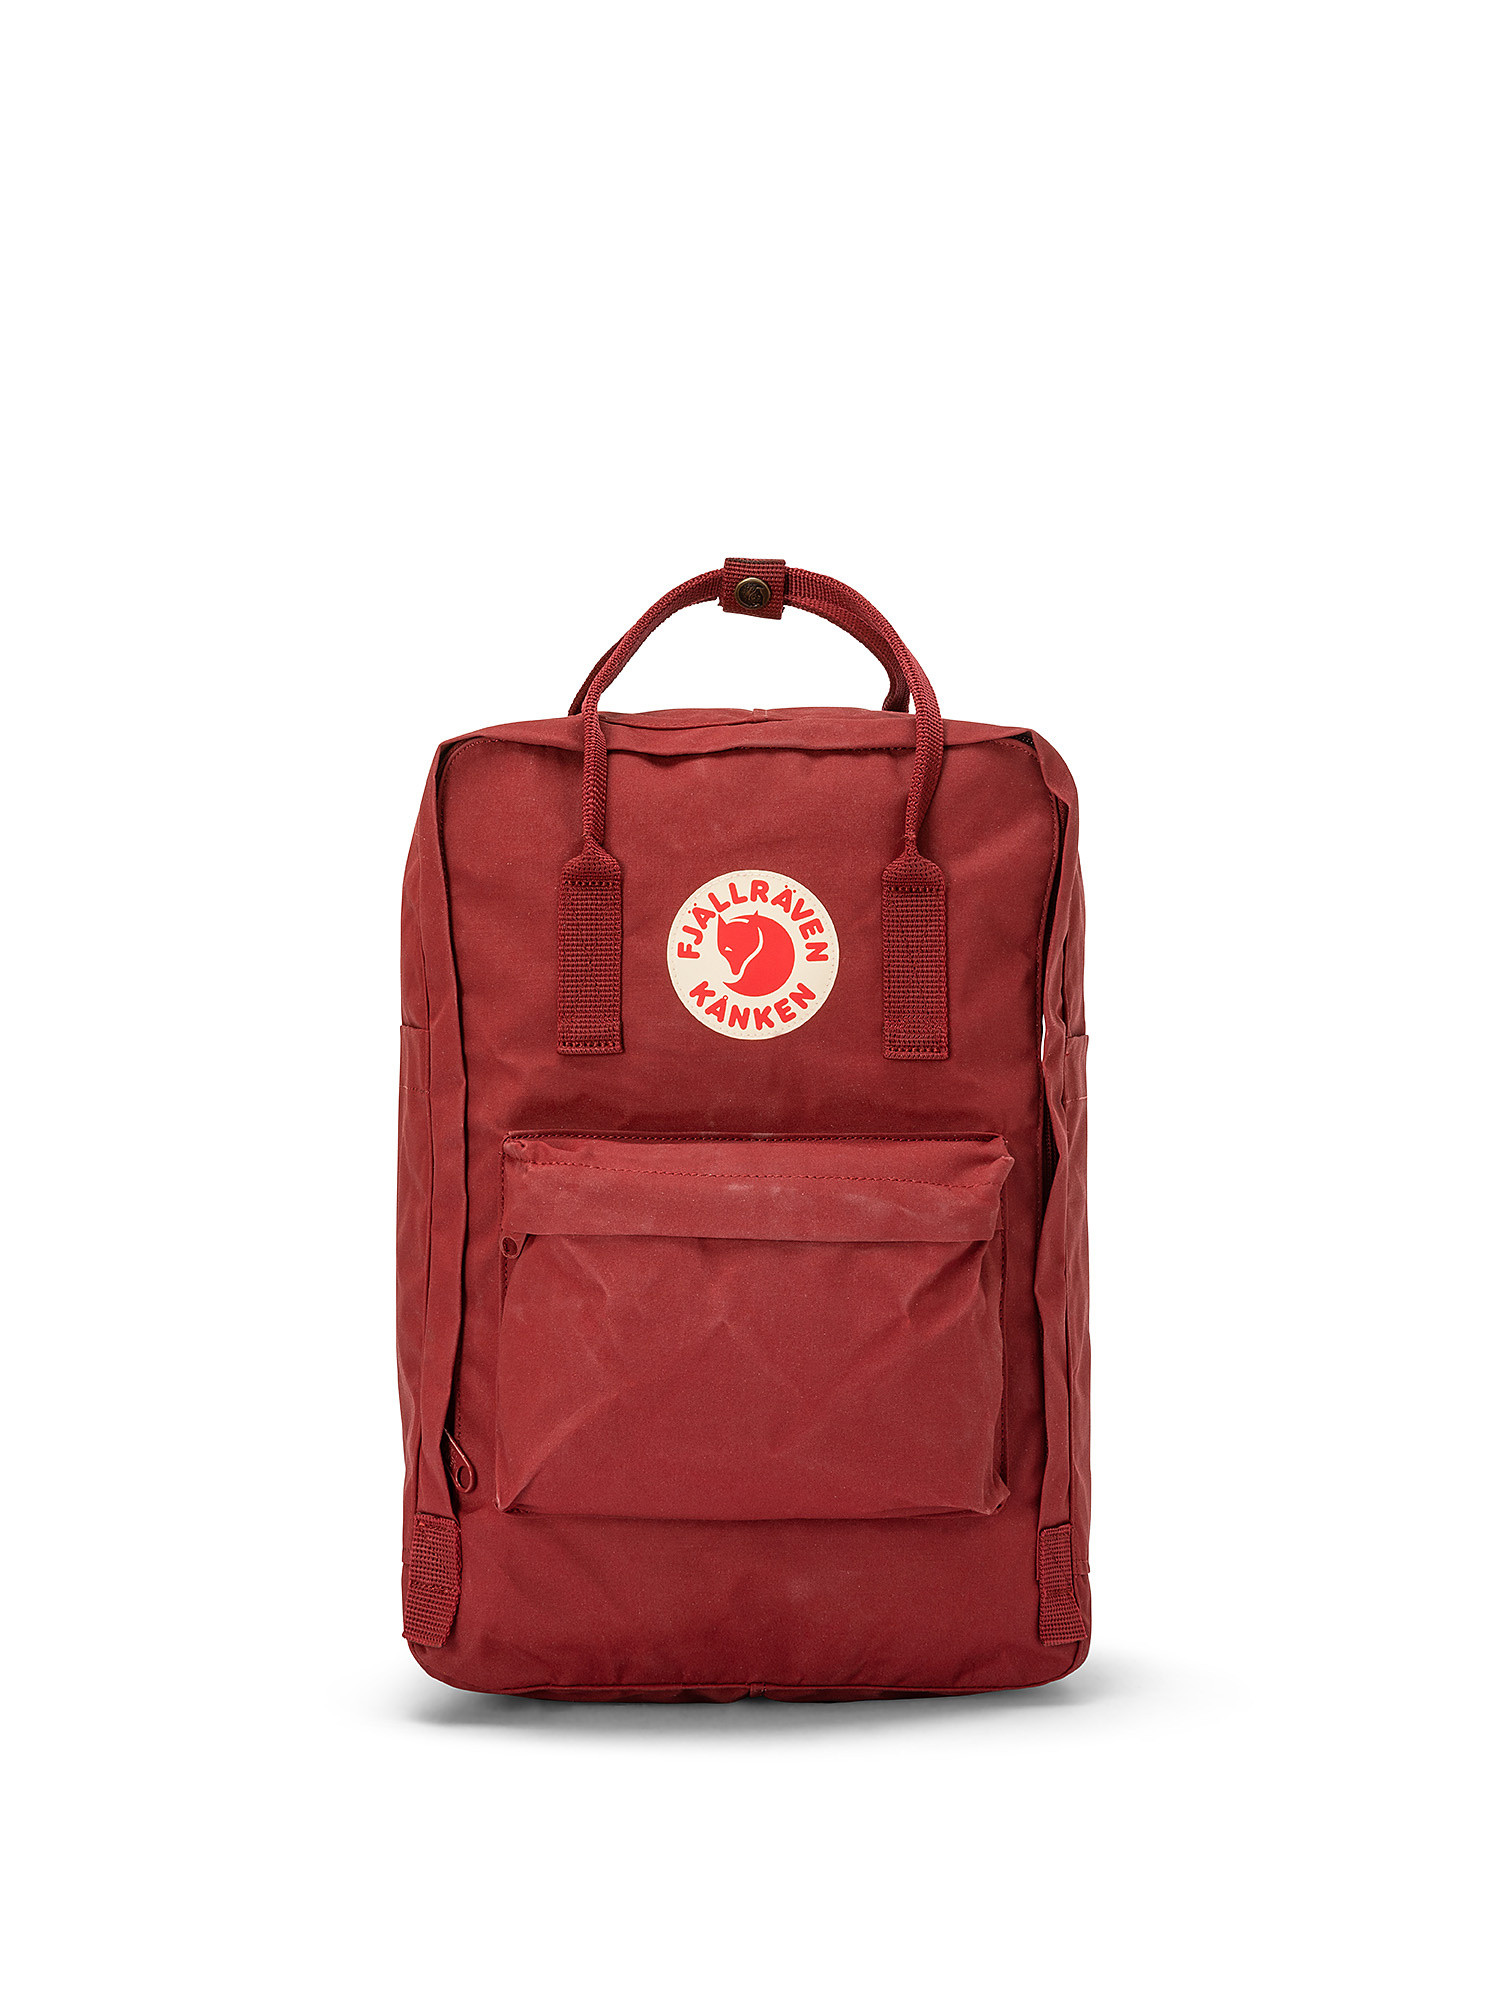 Kanken laptop backpack 15 ", Red Bordeaux, large image number 0